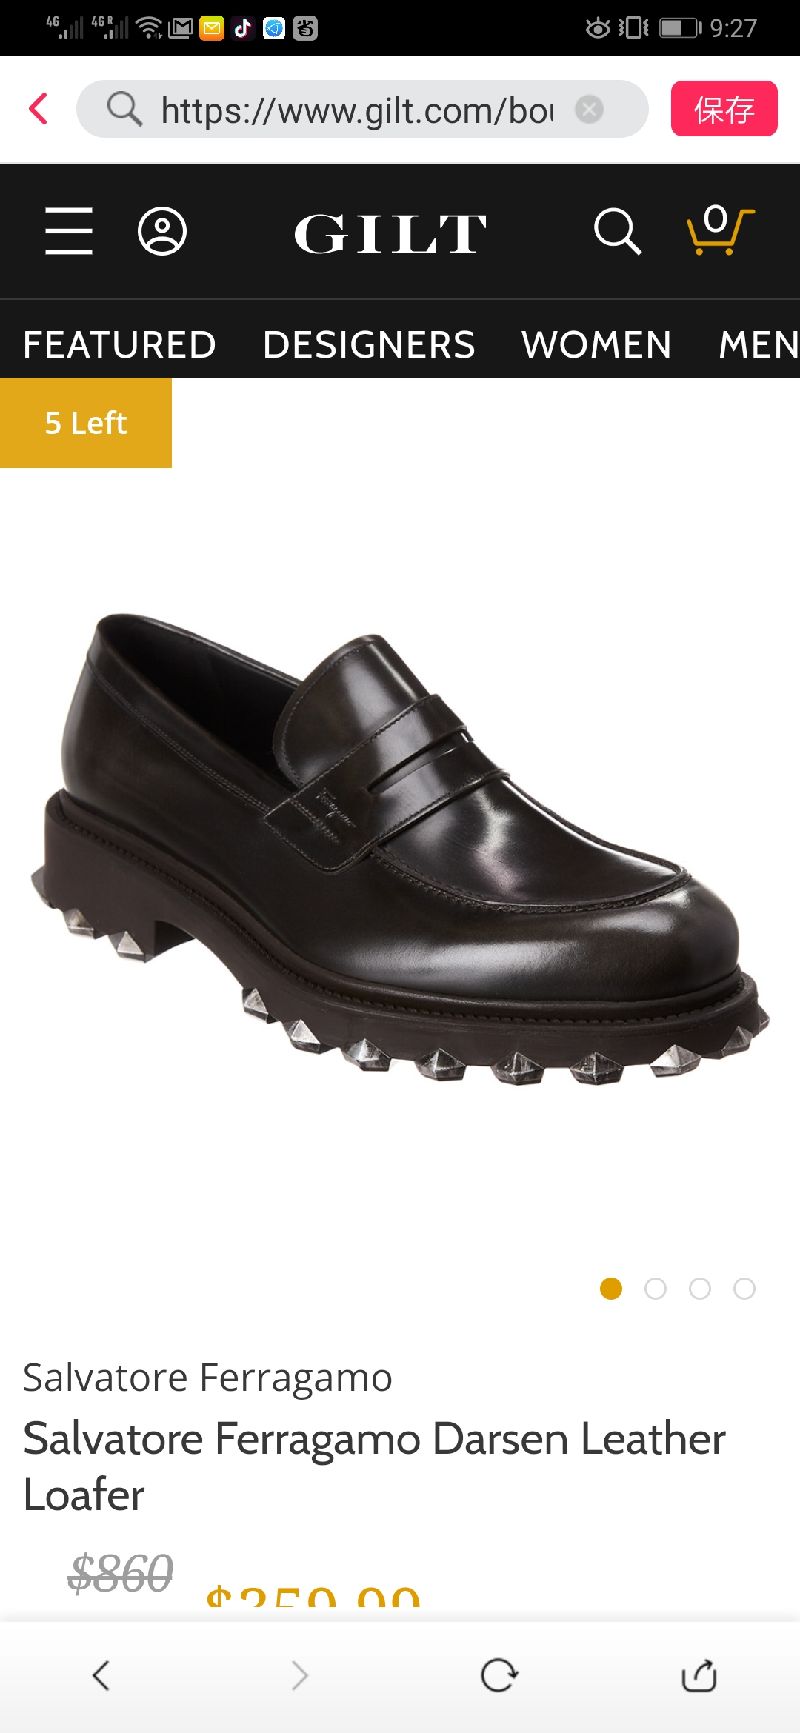 男士乐福鞋Salvatore Ferragamo Darsen Leather Loafer / Gilt